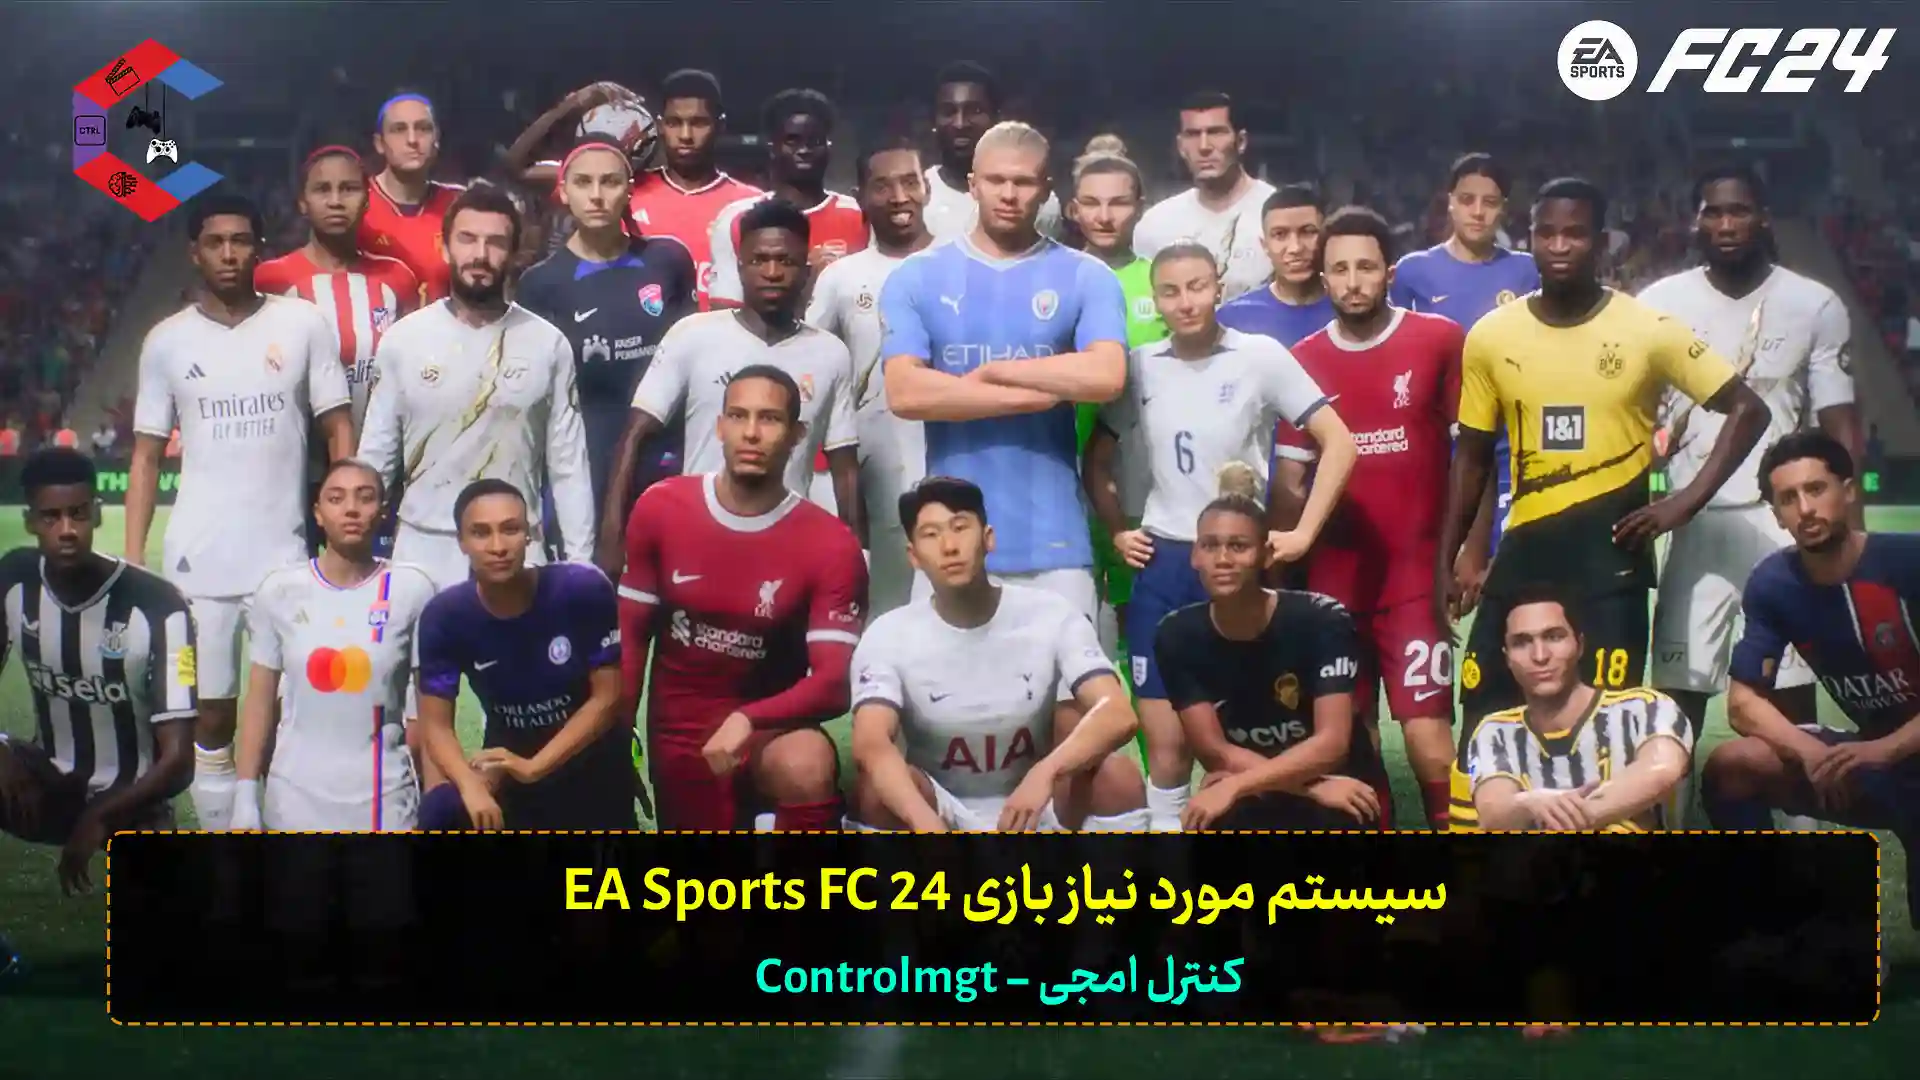 حداقل سیستم مورد نیاز بازی EA Sports FC 24 + سیستم پیشنهادی